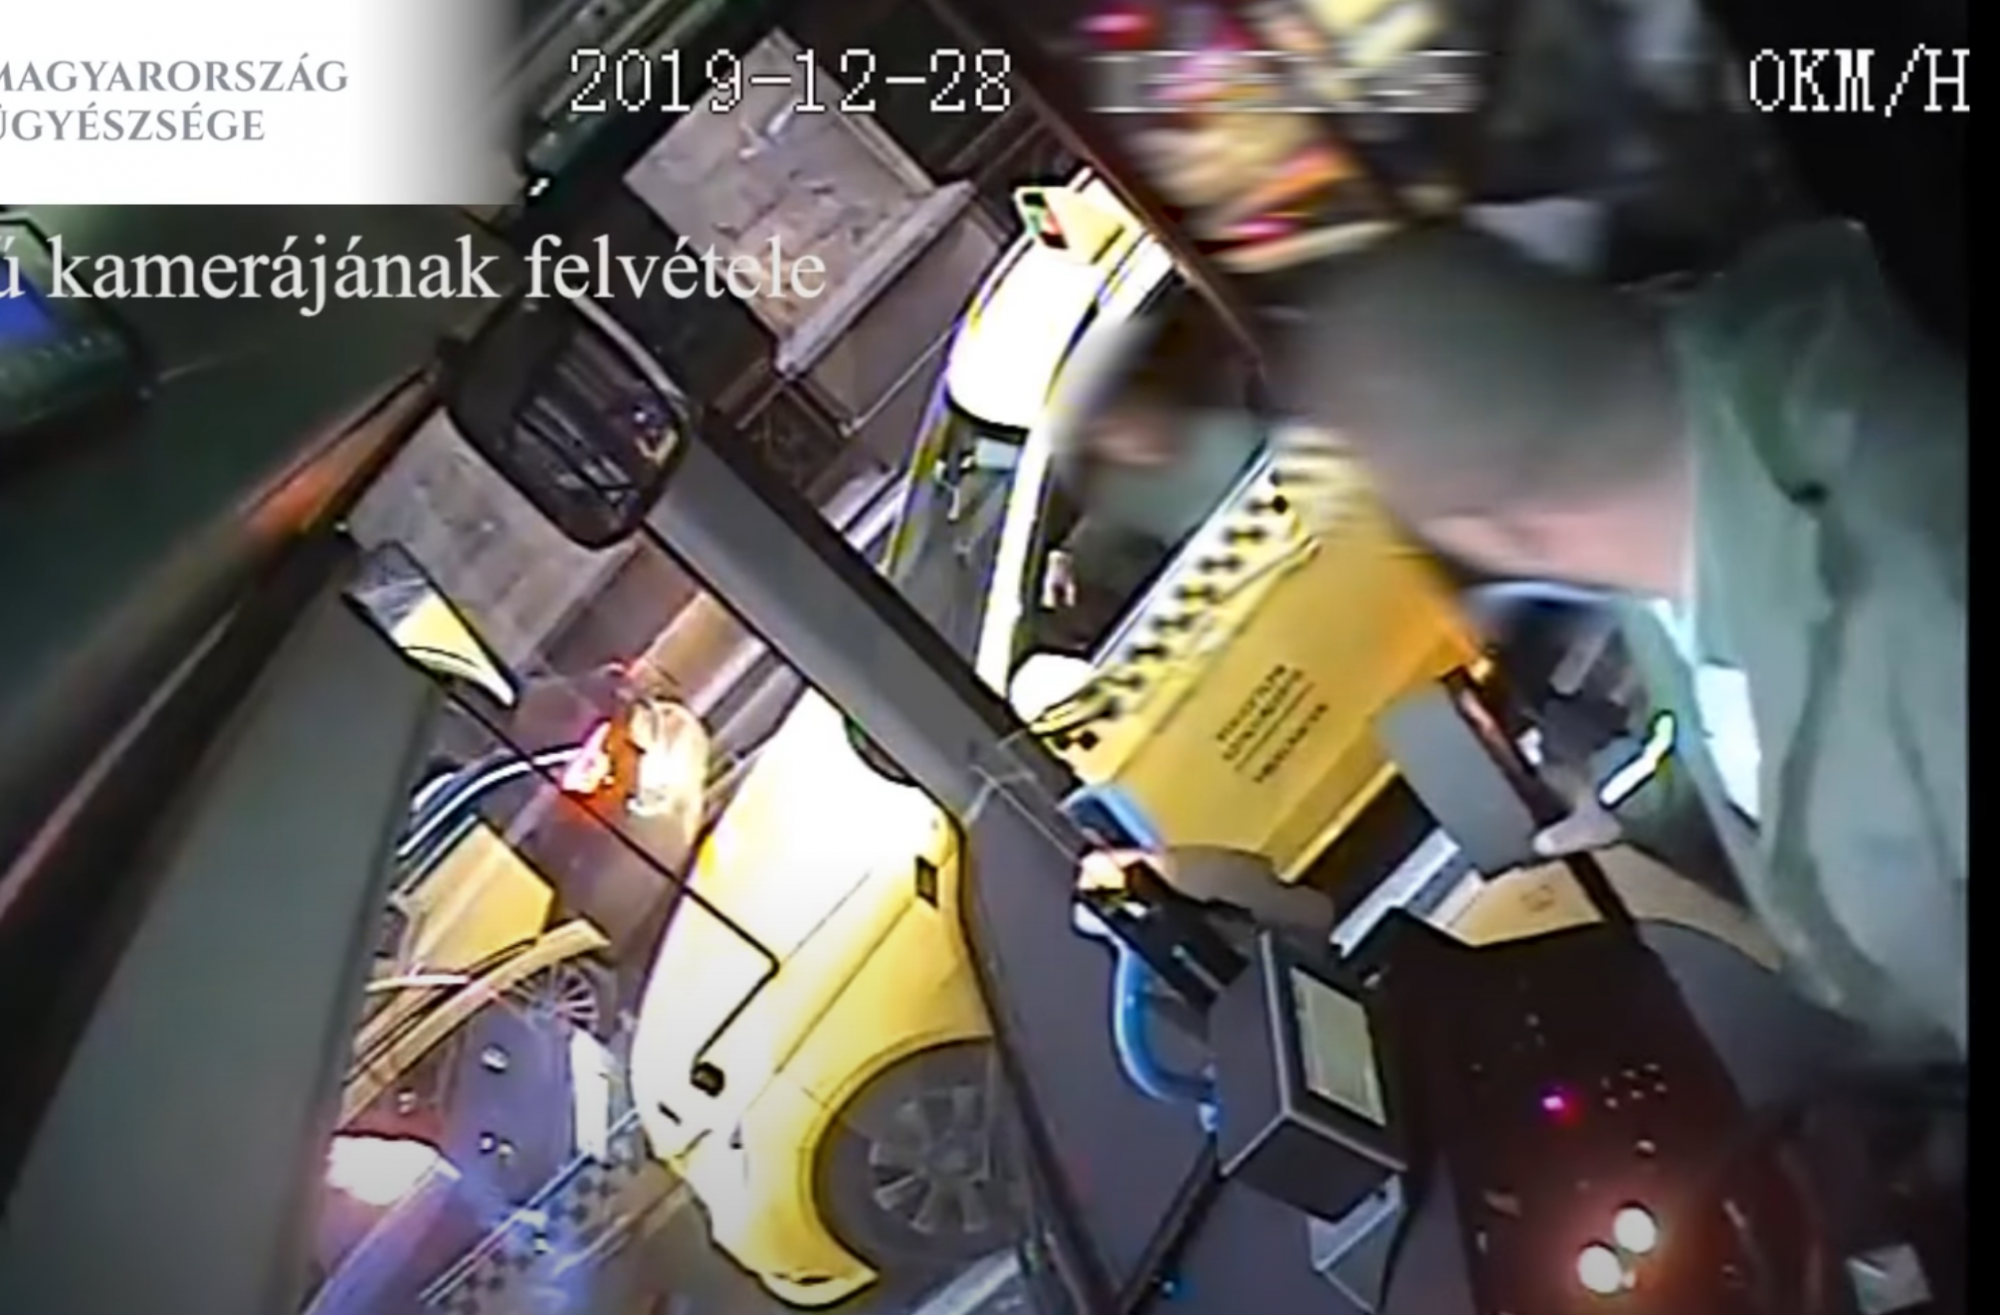 Két év fegyházat kapott a taxisofőr, aki a piros lámpánál verekedett össze egy buszsofőrrel